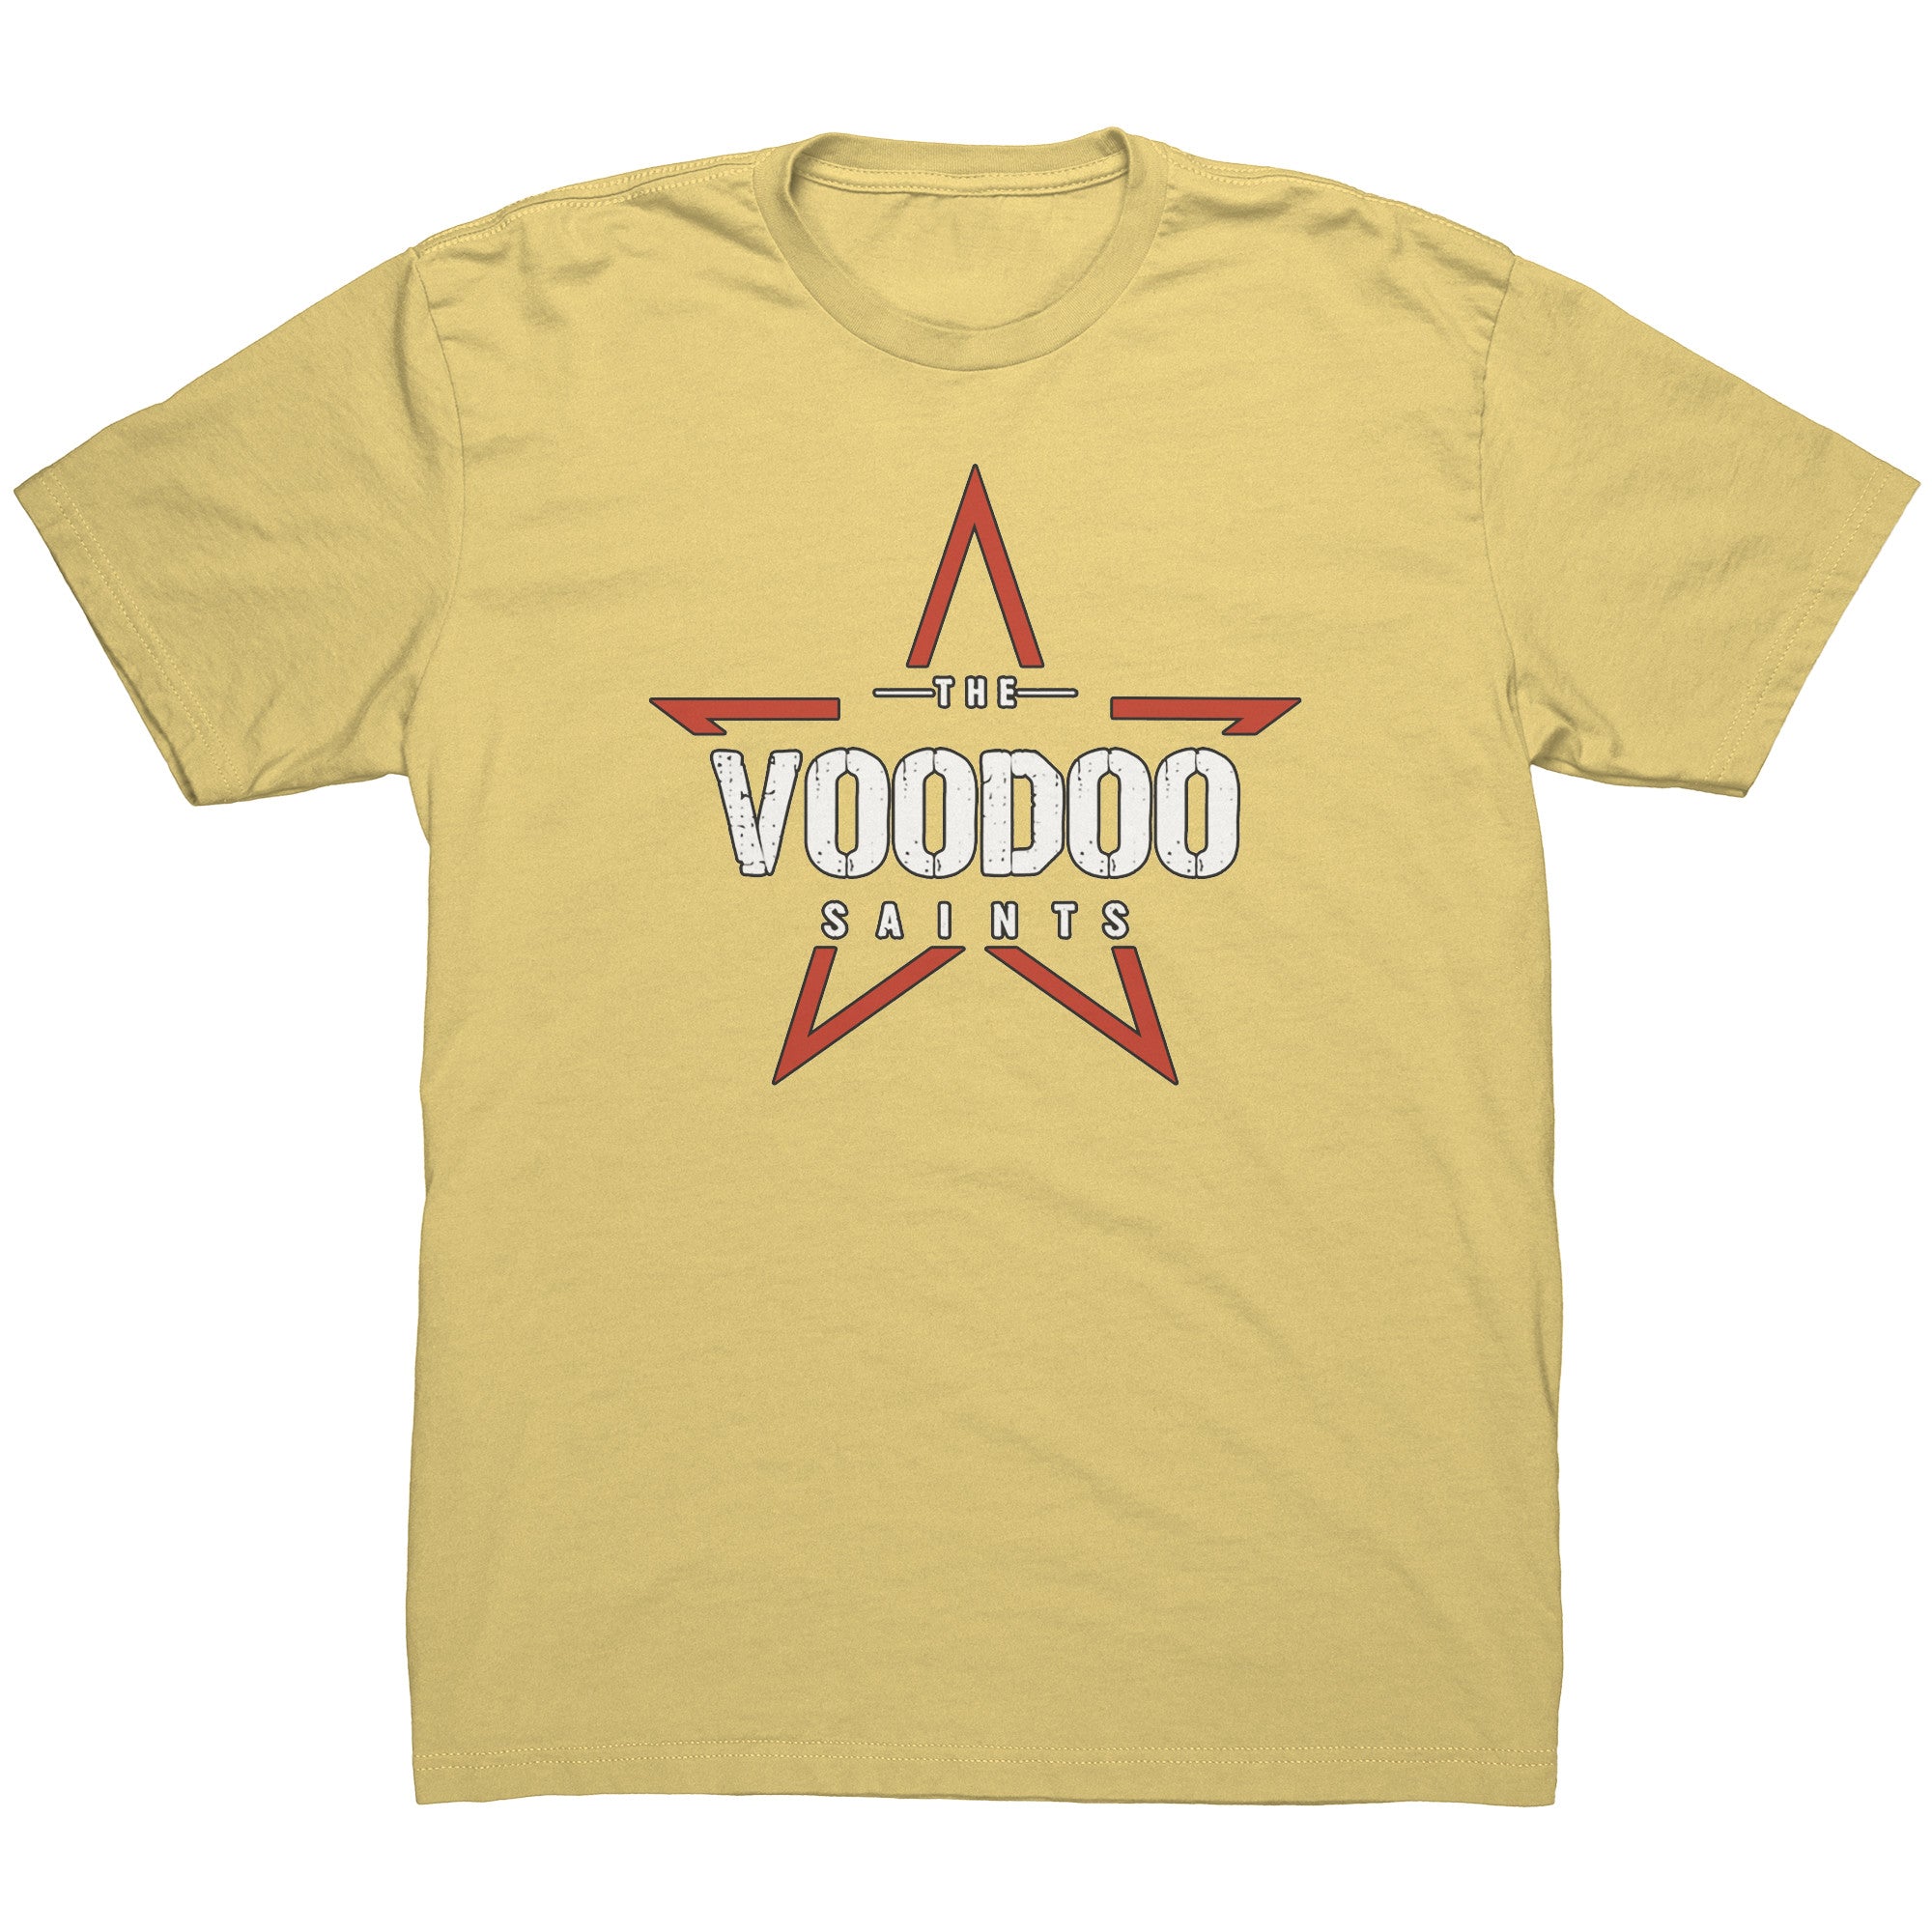 VOODOO STAR-